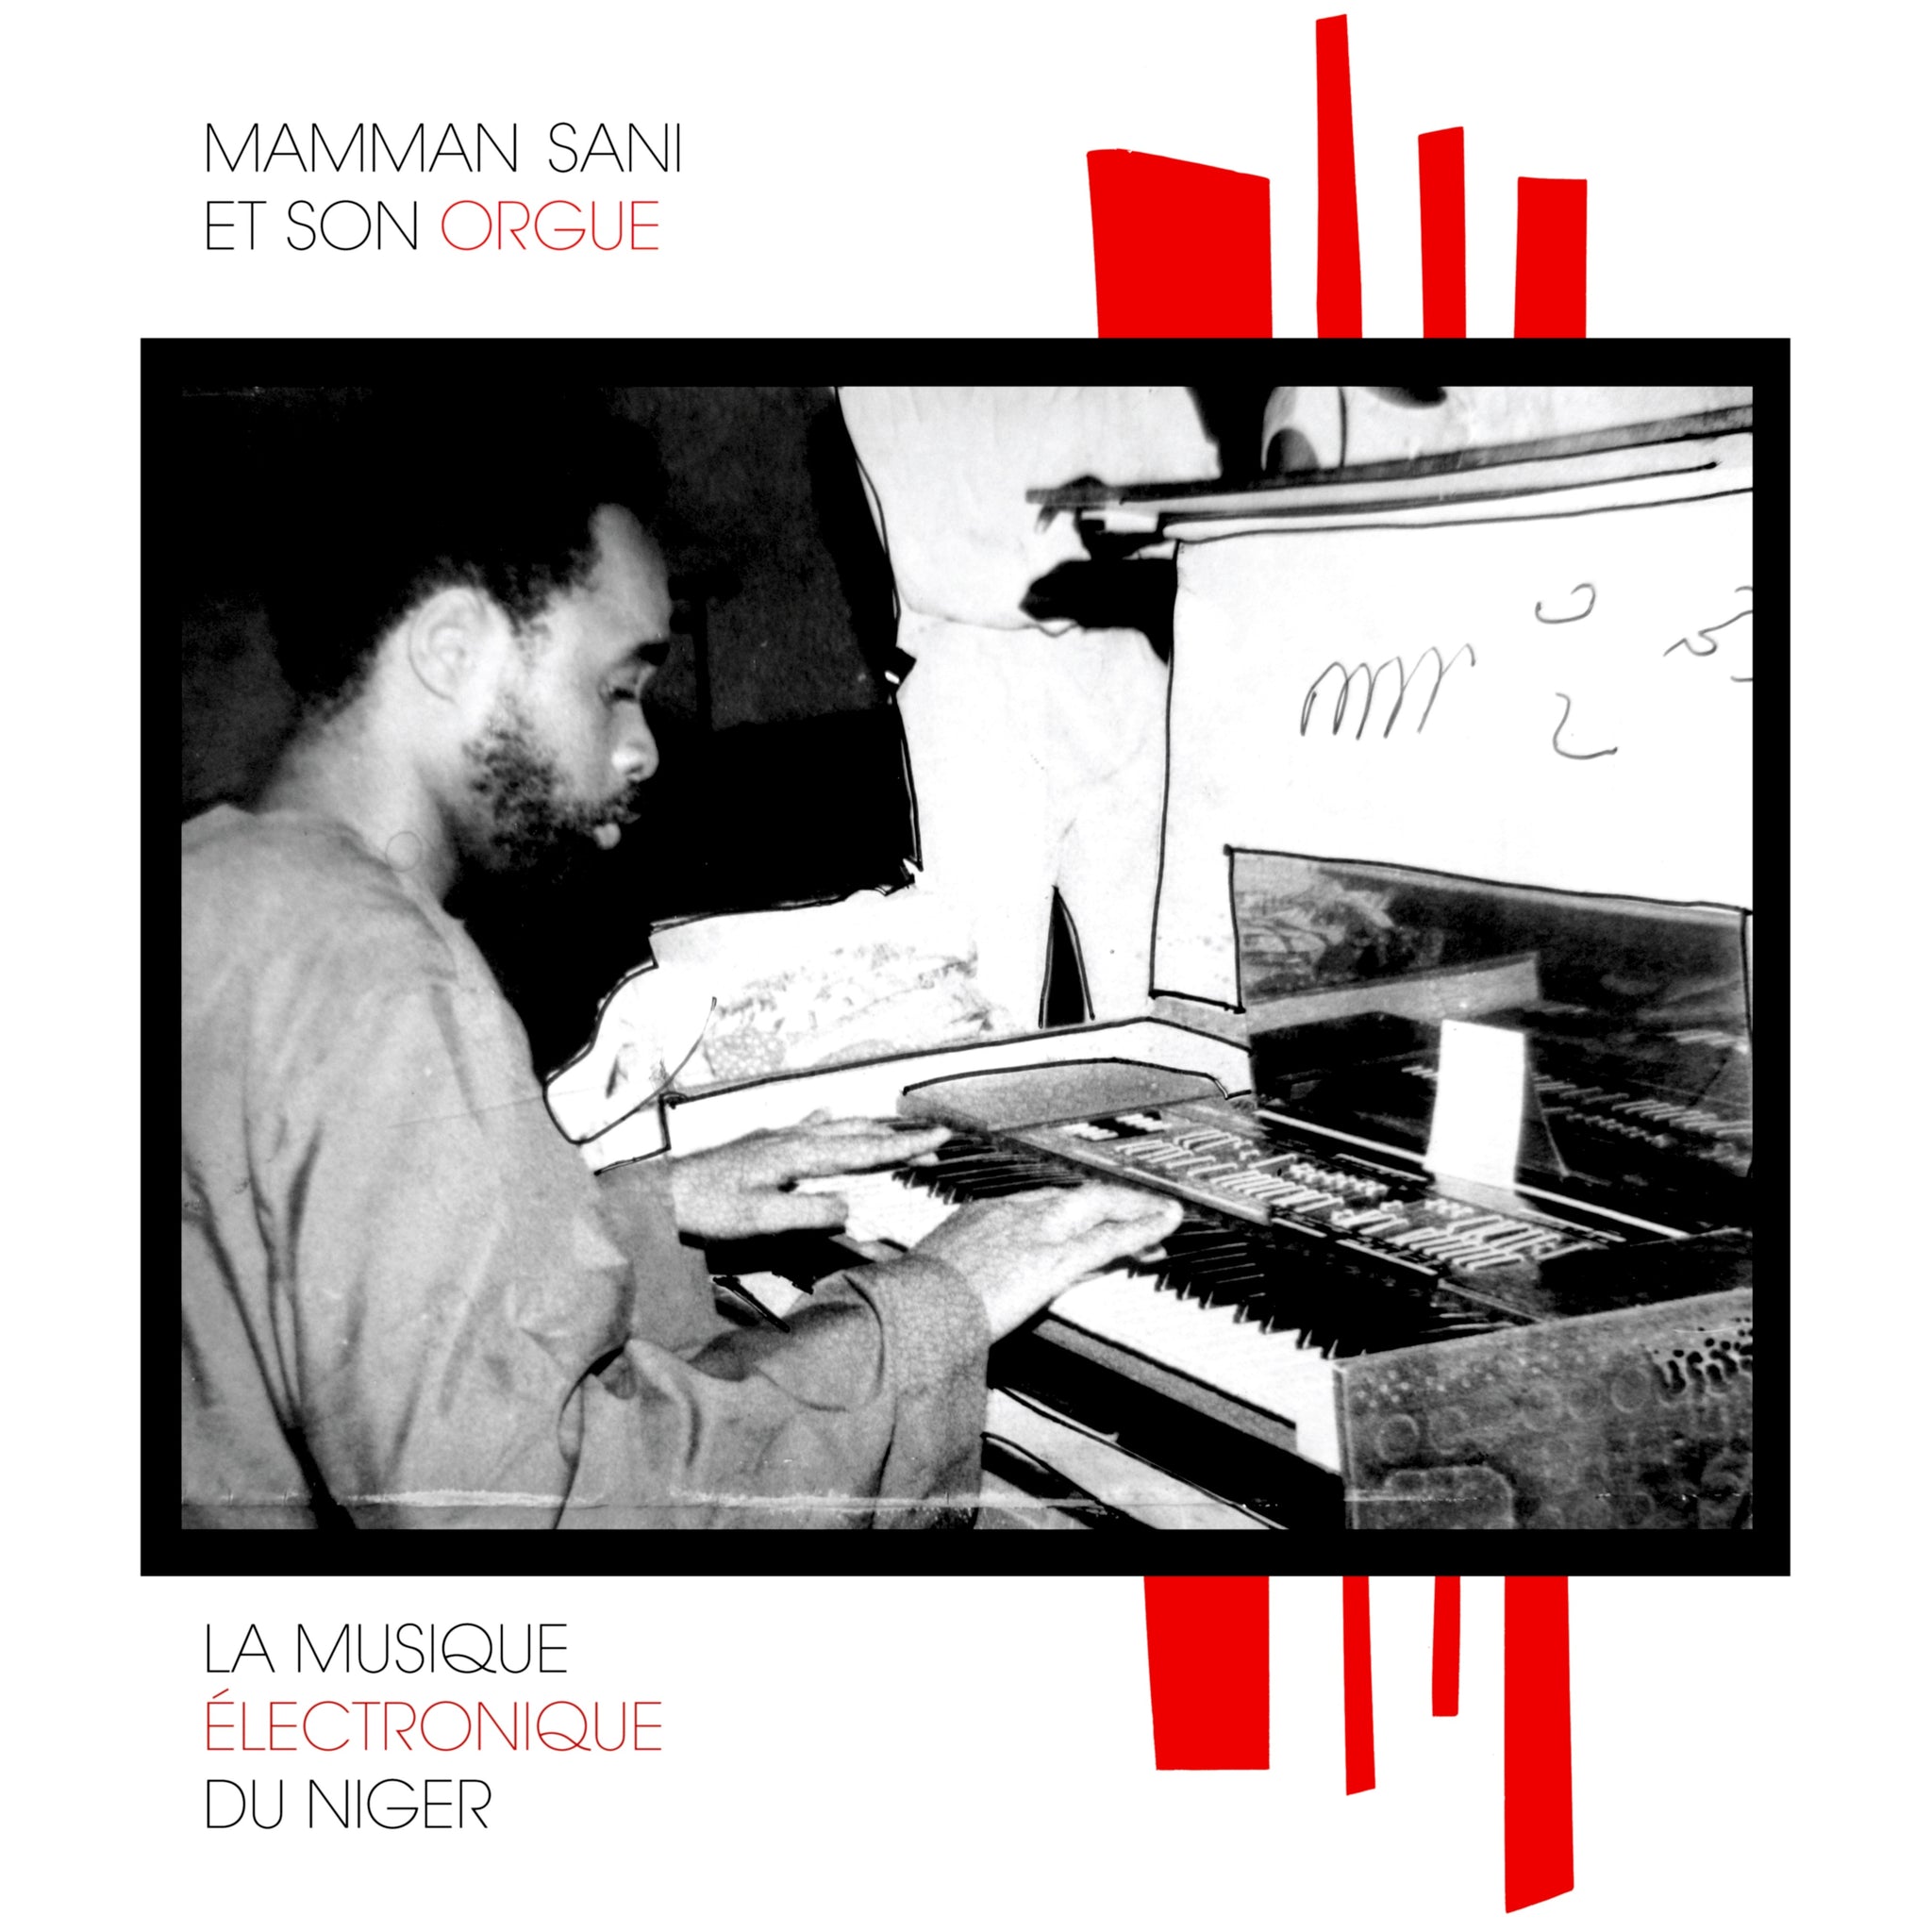 Mamman Sani ‎– La Musique Électronique Du Niger (1978) - New Lp Record 2019 Sahel Sounds USA Vinyl - Electronic / Minimal / African Folk